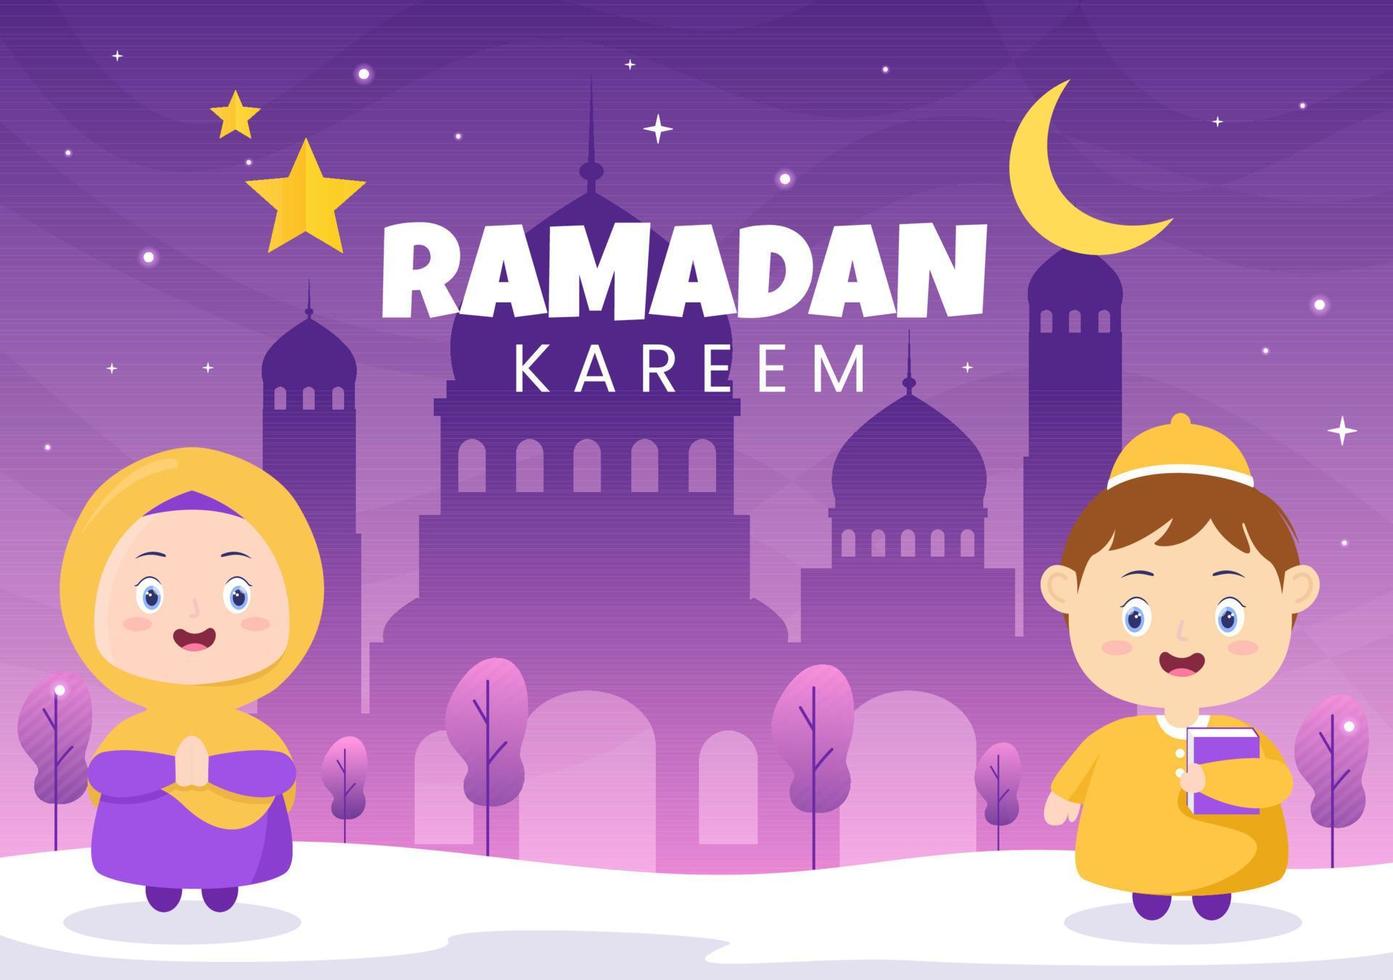 ramadan kareem met mensen, moskee, lantaarns en maan in platte achtergrond vectorillustratie voor religieuze vakantie islamitische eid fitr of adha festival spandoek of poster vector